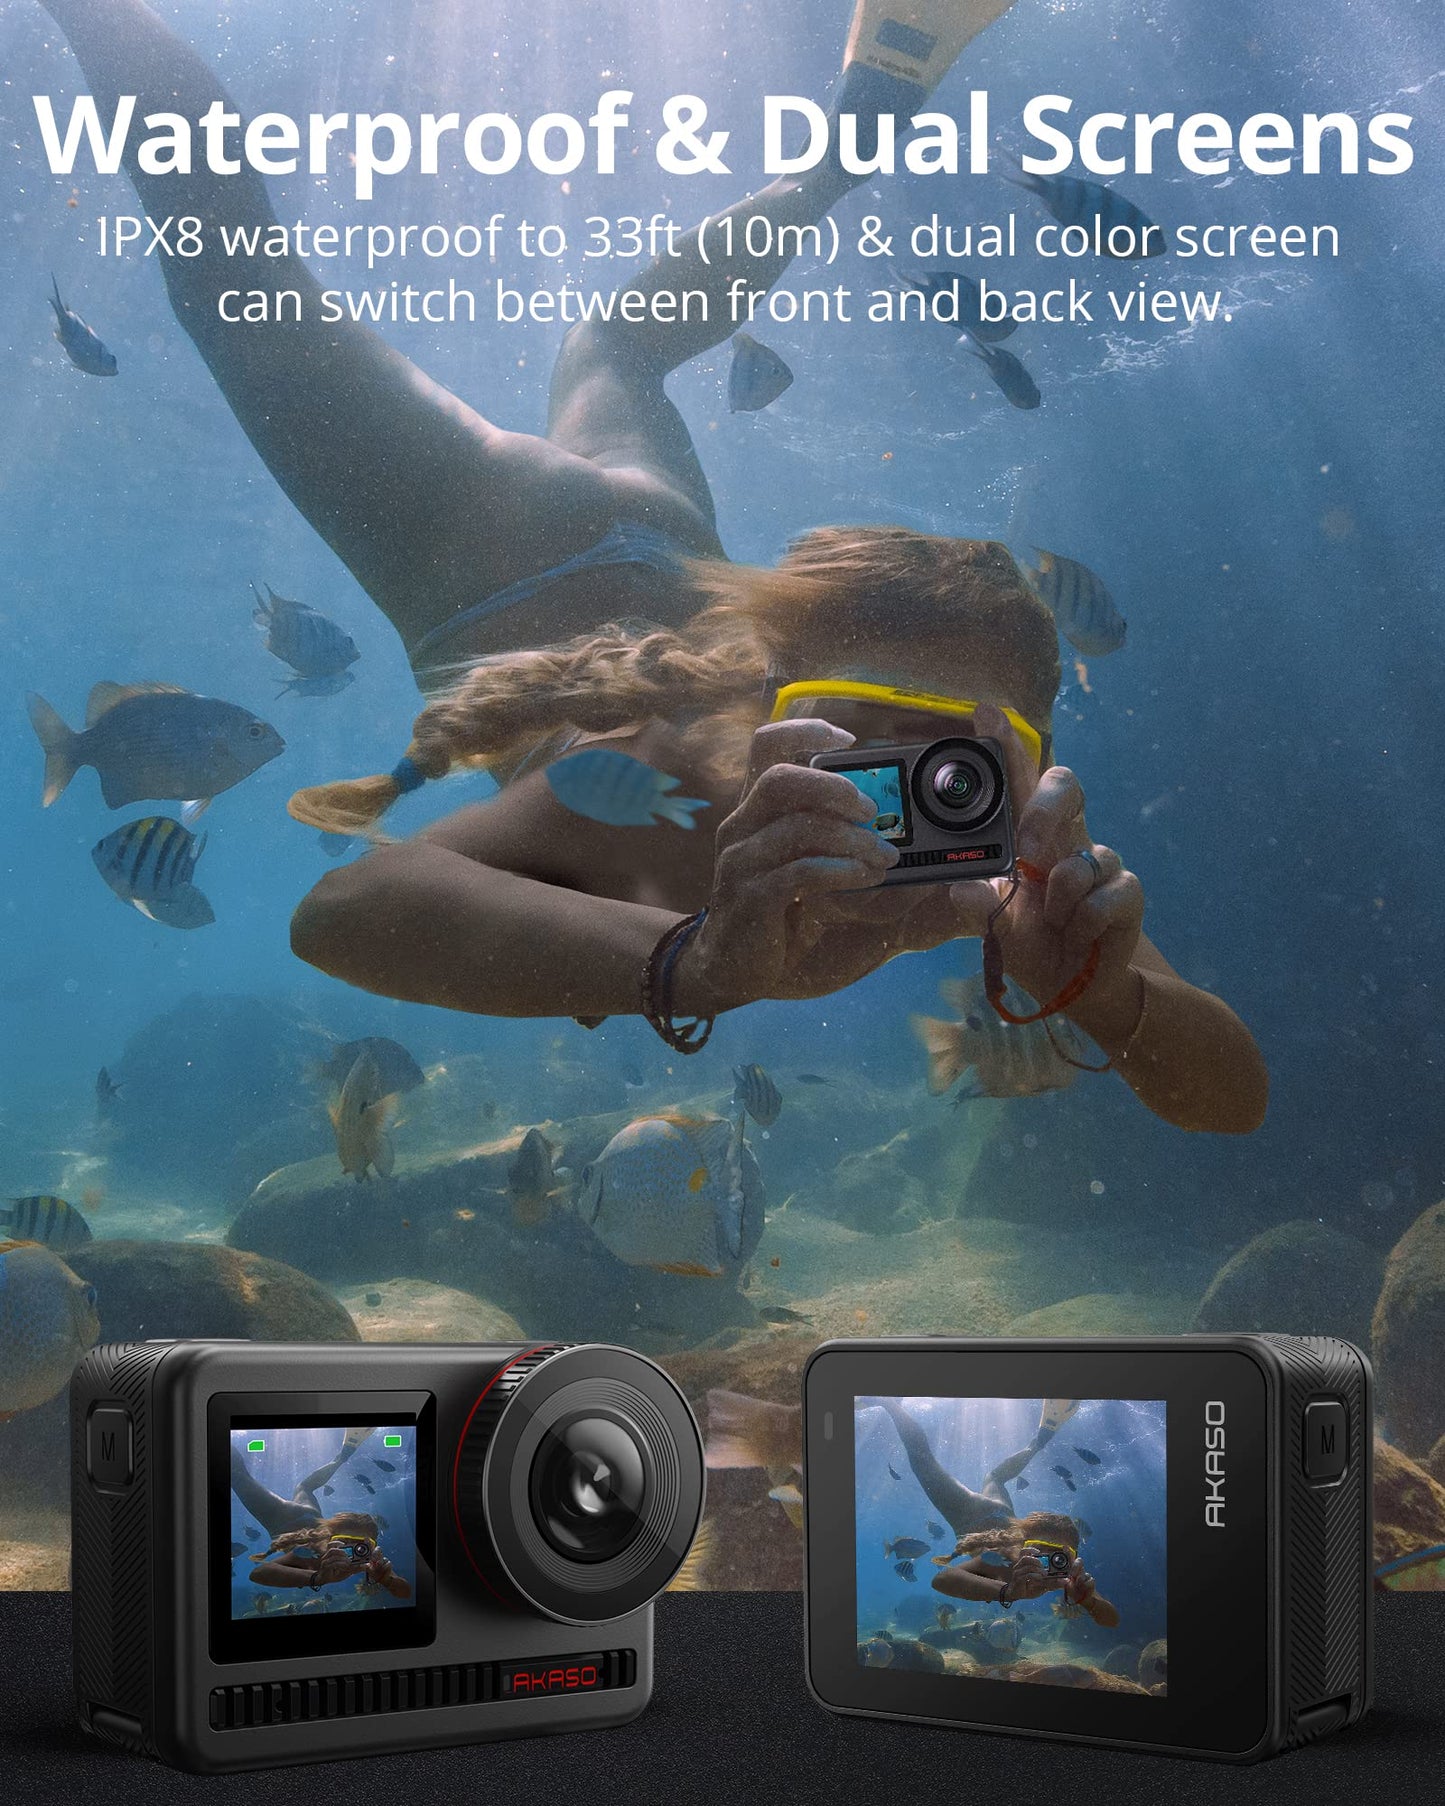 AKASO Brave 8 4K60FPS Action Cam, Foto da 48MP Videocamera Subacquea Doppio Touchscreen